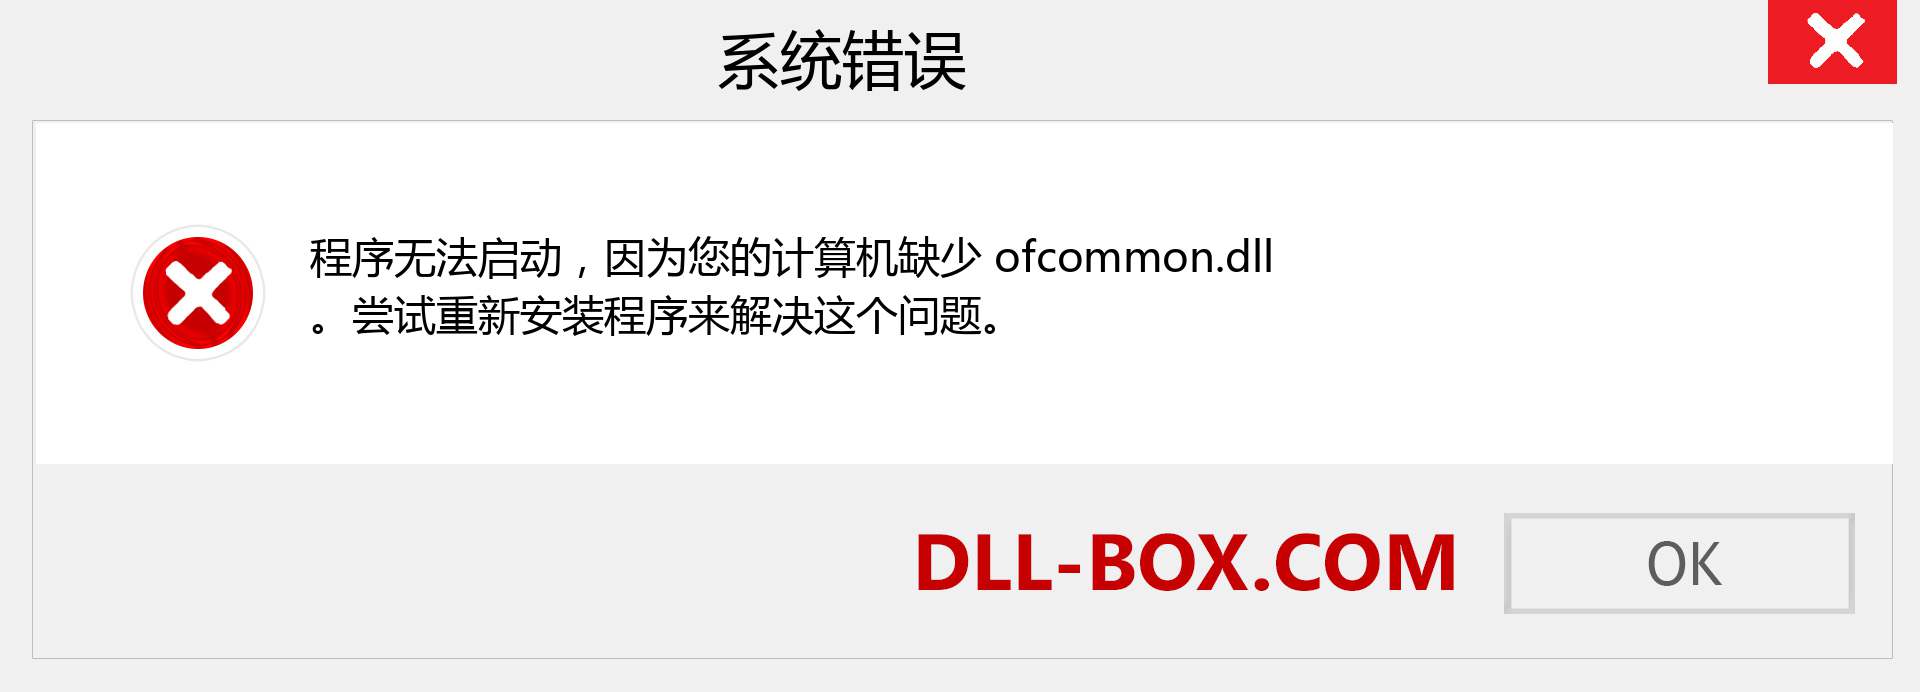 ofcommon.dll 文件丢失？。 适用于 Windows 7、8、10 的下载 - 修复 Windows、照片、图像上的 ofcommon dll 丢失错误